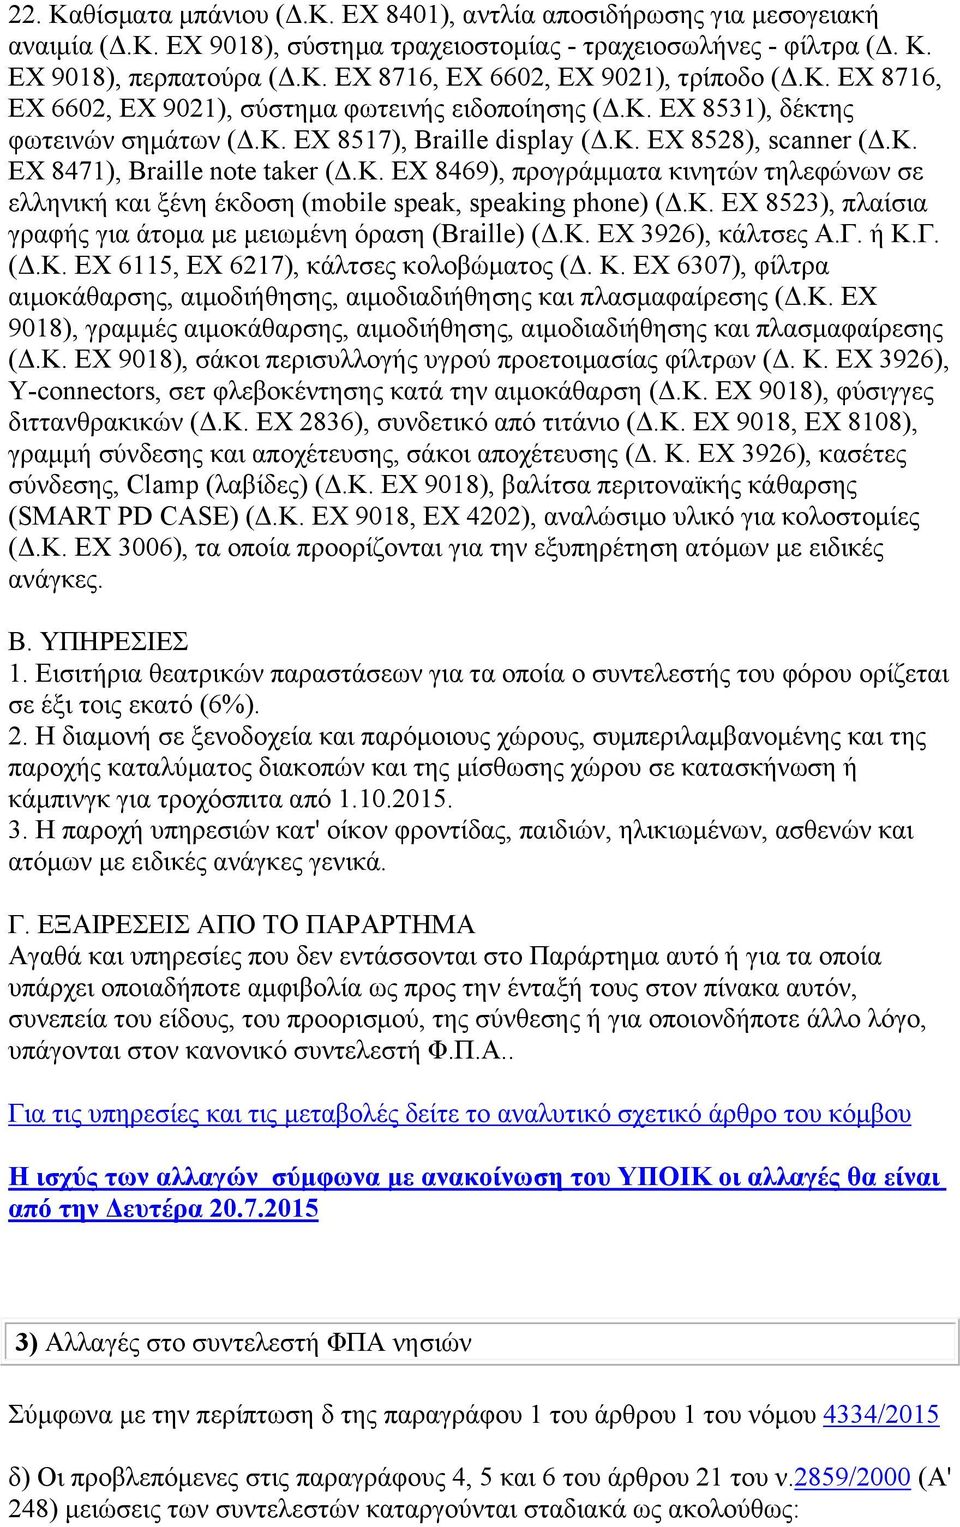 Κ. ΕΧ 8523), πλαίσια γραφής για άτομα με μειωμένη όραση (Braille) (Δ.Κ. ΕΧ 3926), κάλτσες Α.Γ. ή Κ.Γ. (Δ.Κ. ΕΧ 6115, ΕΧ 6217), κάλτσες κολοβώματος (Δ. Κ. ΕΧ 6307), φίλτρα αιμοκάθαρσης, αιμοδιήθησης, αιμοδιαδιήθησης και πλασμαφαίρεσης (Δ.